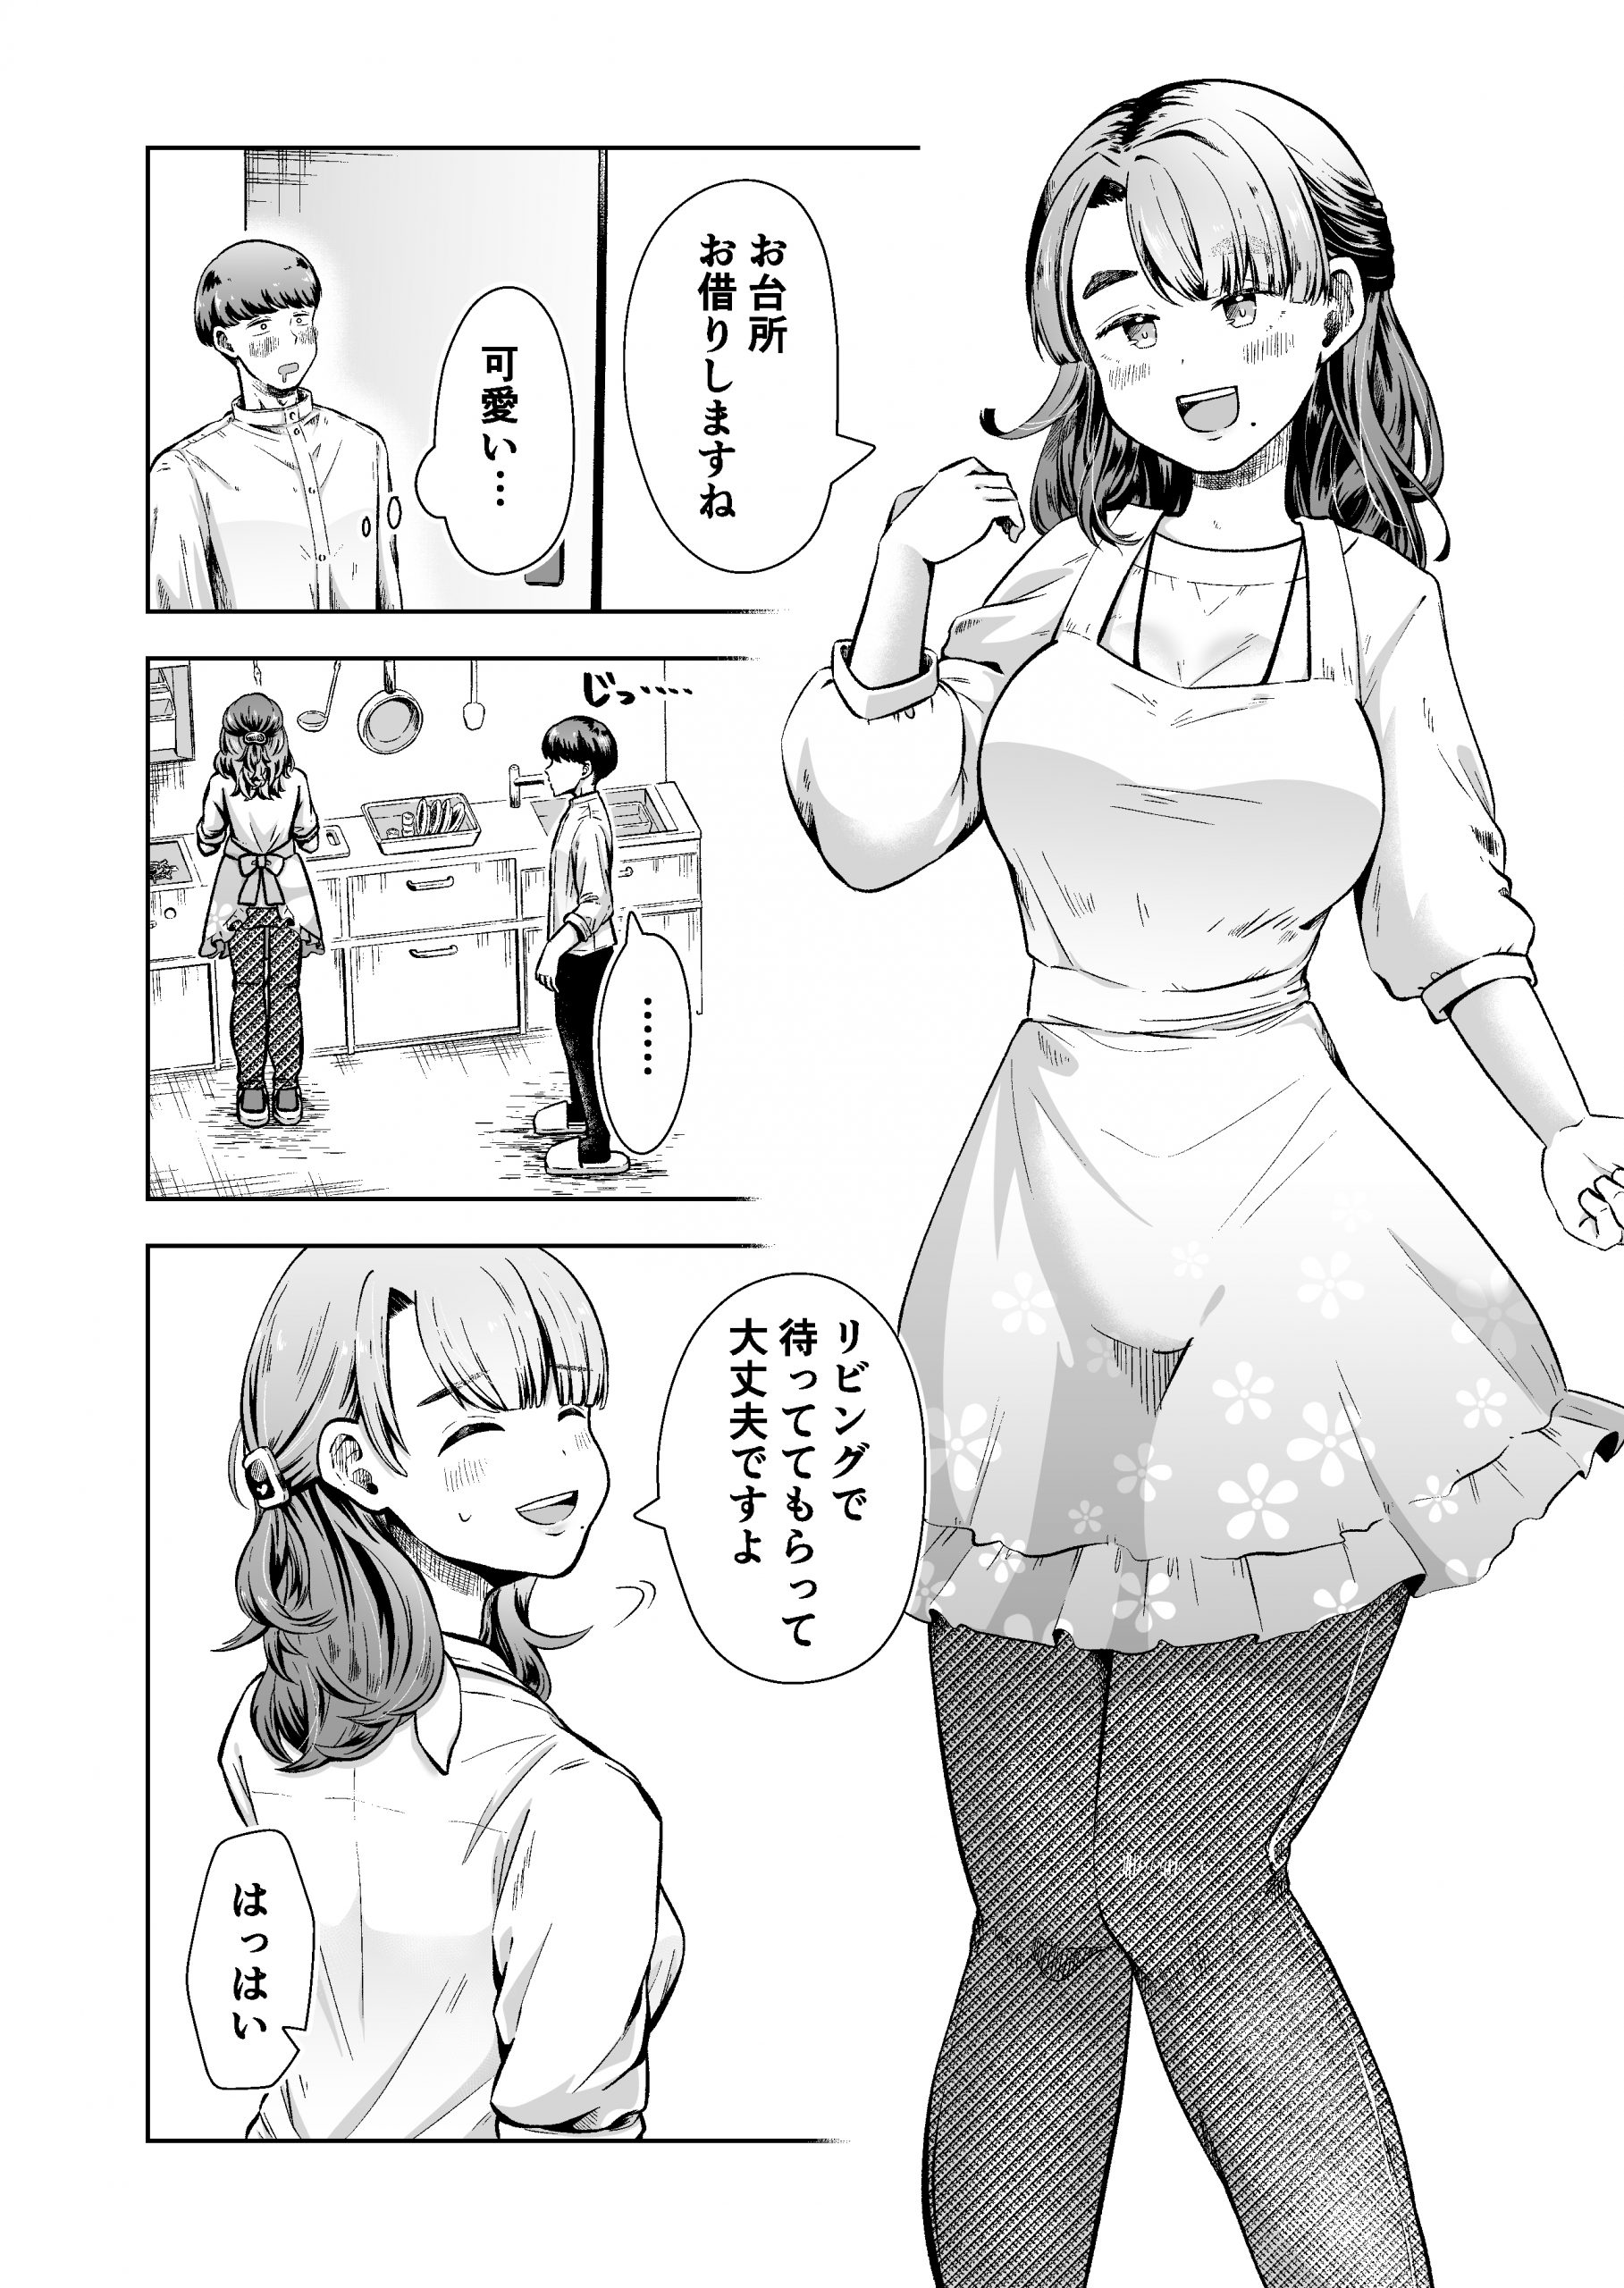 料理代行サービスで働く桜さん-3-scaled 【エロ漫画人妻】料理代行サービスの人妻さんがエッチなサービスもしてくれるようで…